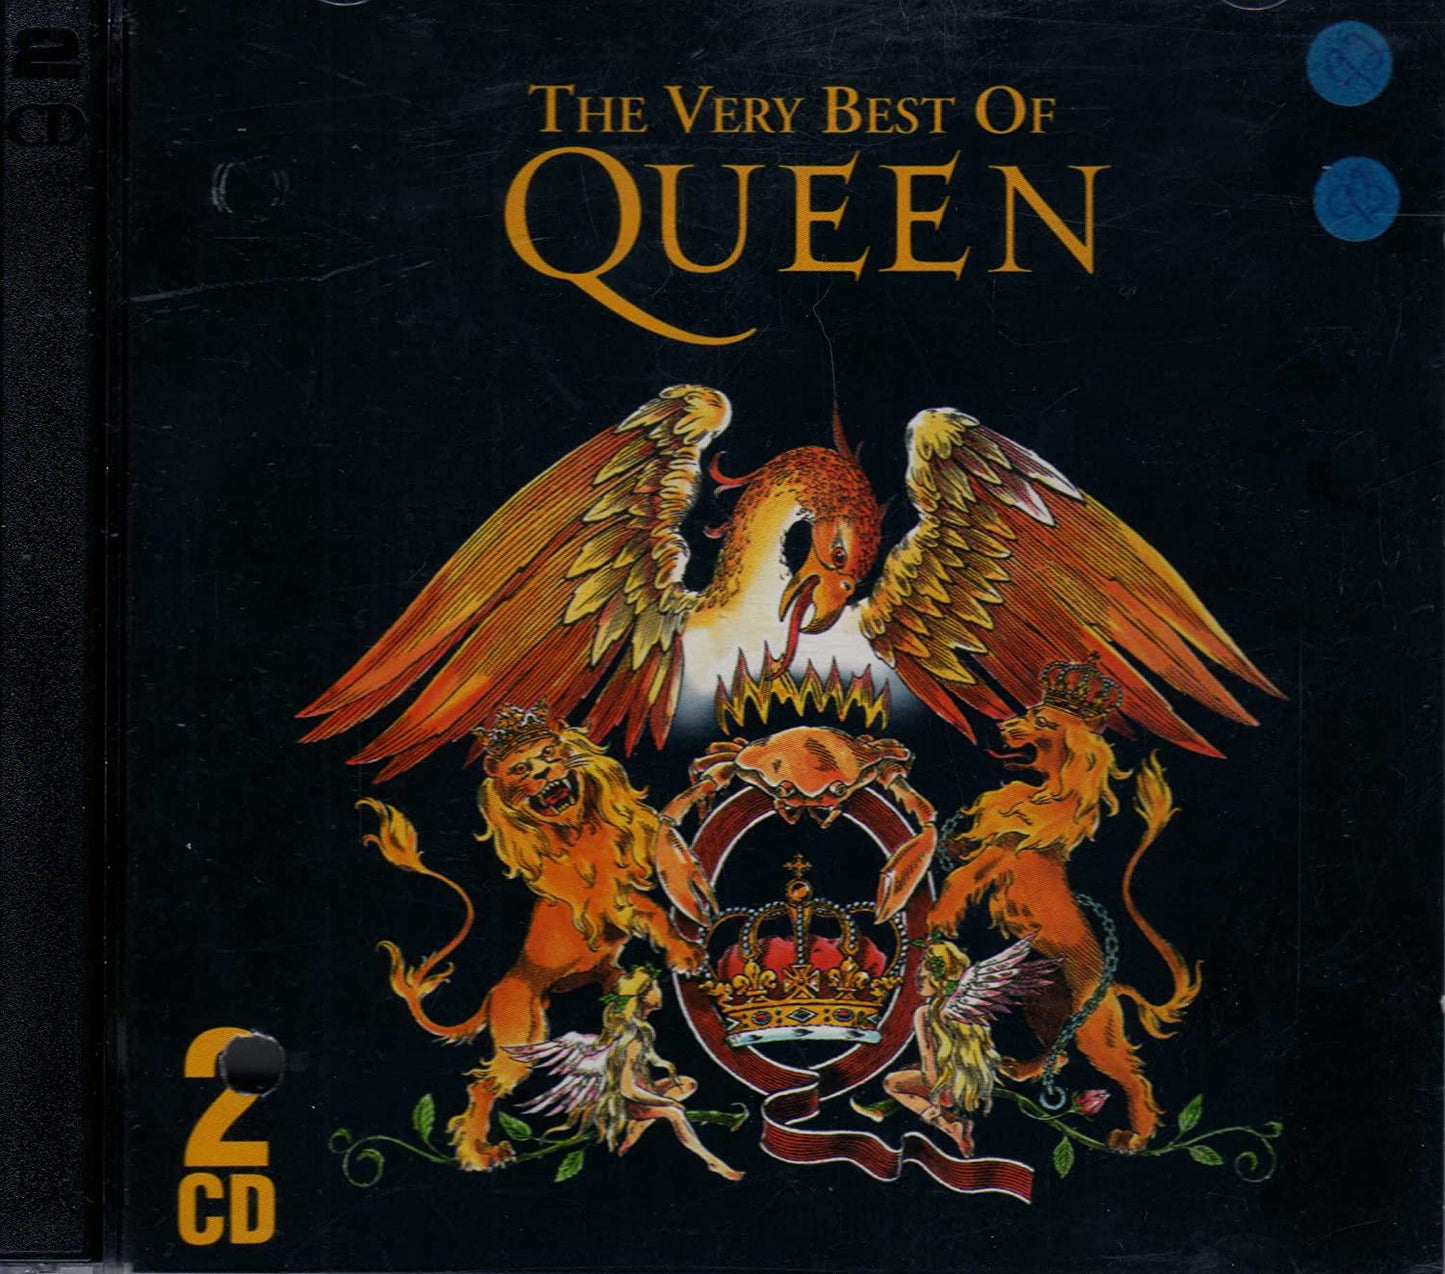 The Very Best of Queen [Audio CD] Queen